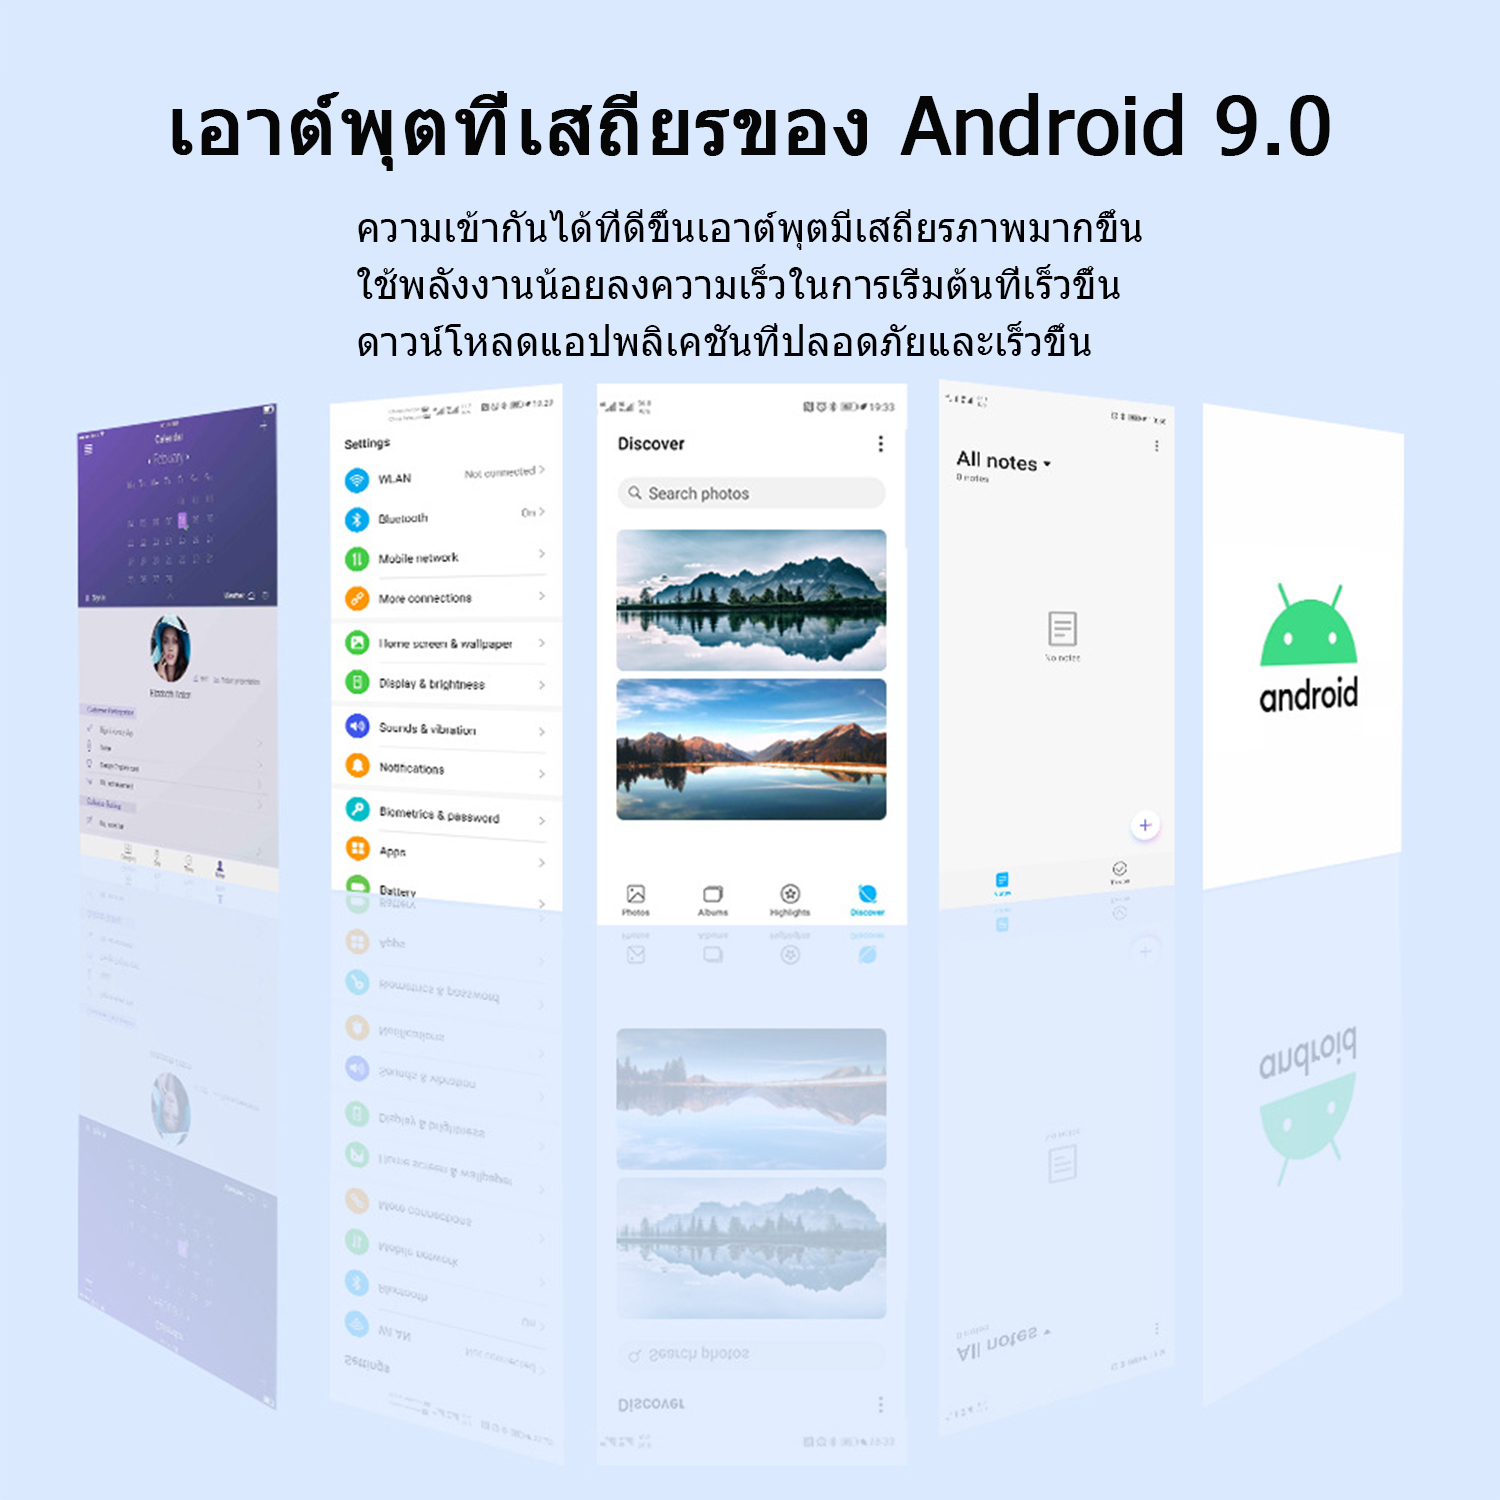 ลองดูภาพสินค้า 2021 HOT Tablets ศูนย์ไทย Realmi แท็บเล็ต แท็บเล็ต แท็บเล็ตแอนดรอยด์ ขนาดหน้าจอ 10.1 นิ้ว เพรียวบาง กะทัดรัด ร้านค้าอย่างเป็นทางการ แท็บเล็ต Ram 8Gb + Rom 256Gb Android 9.0 ระบบ อัพเกรดชิป / มีประสิทธิภาพดีขึ้น รองรับภาษาไทยและอีกหลากหลายภาษา